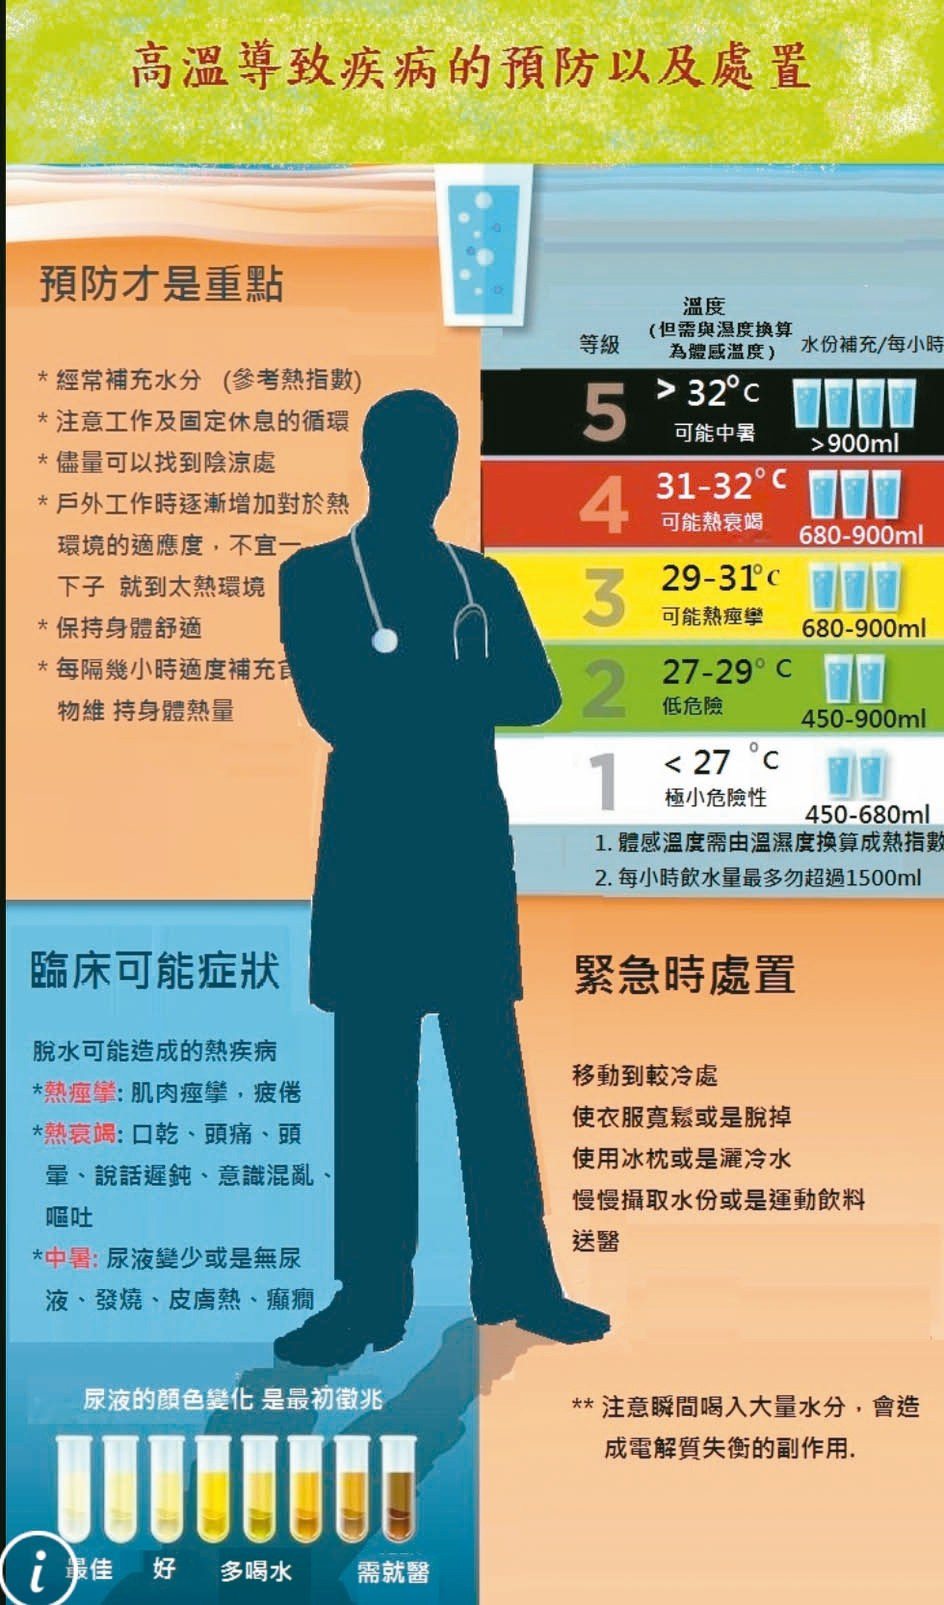 醫師巫慶仁提醒，有慢性病史的高齡患者應避免長時間在高溫環境下活動，身體不適要趕緊到陰涼處降體溫、補水。